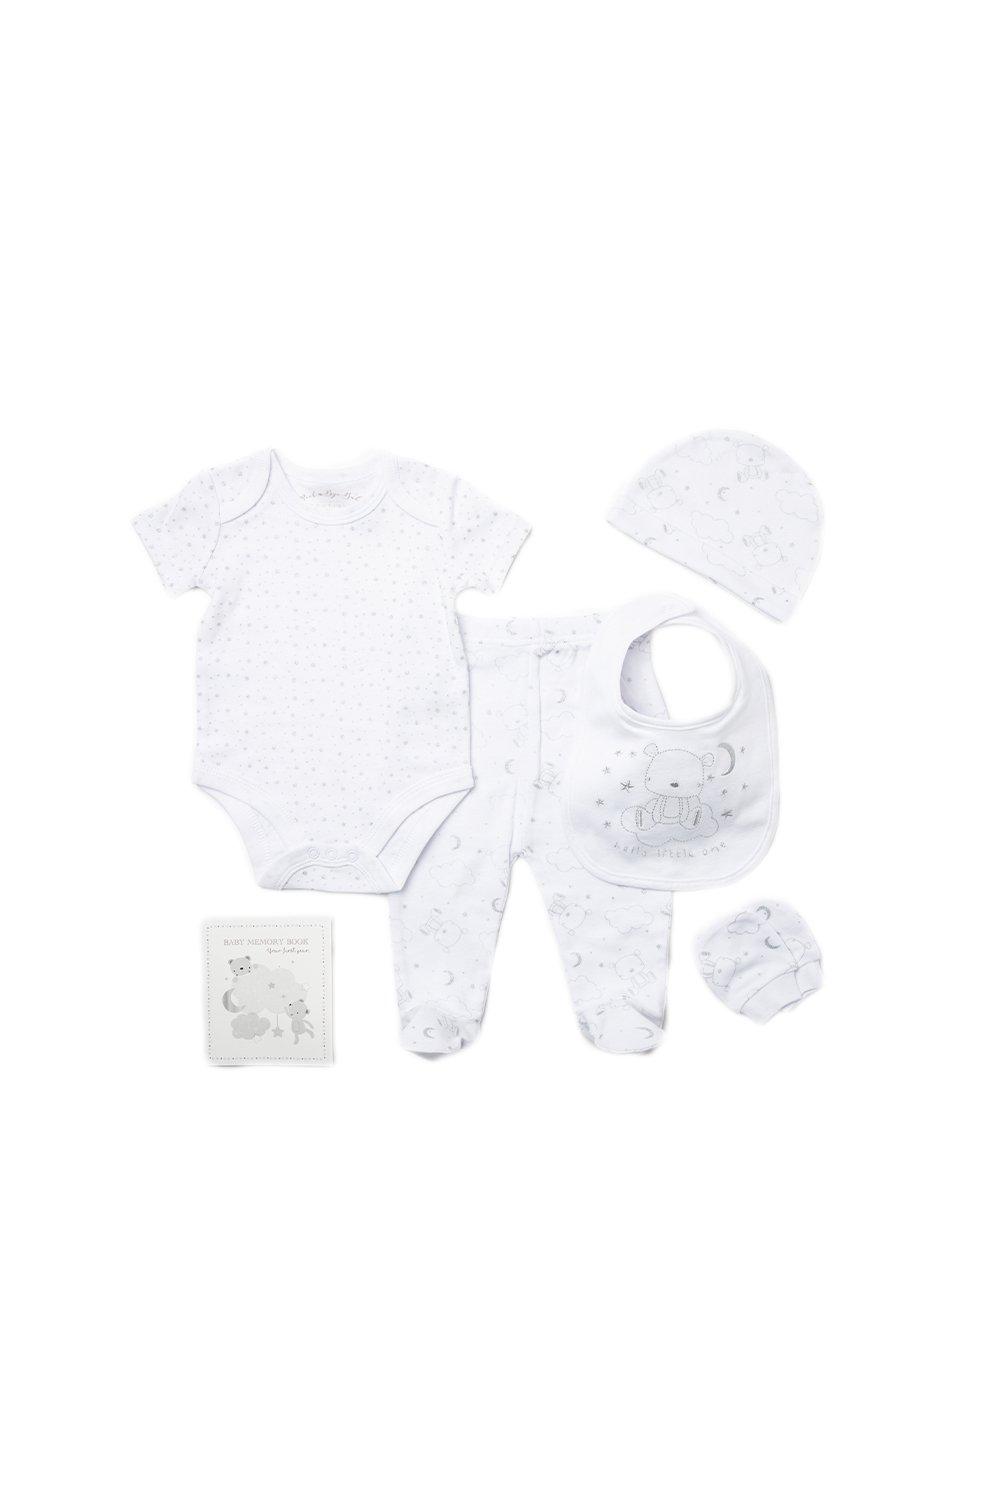 Хлопковый подарочный набор из 6 предметов с вышивкой медведя для ребенка Rock a Bye Baby, белый